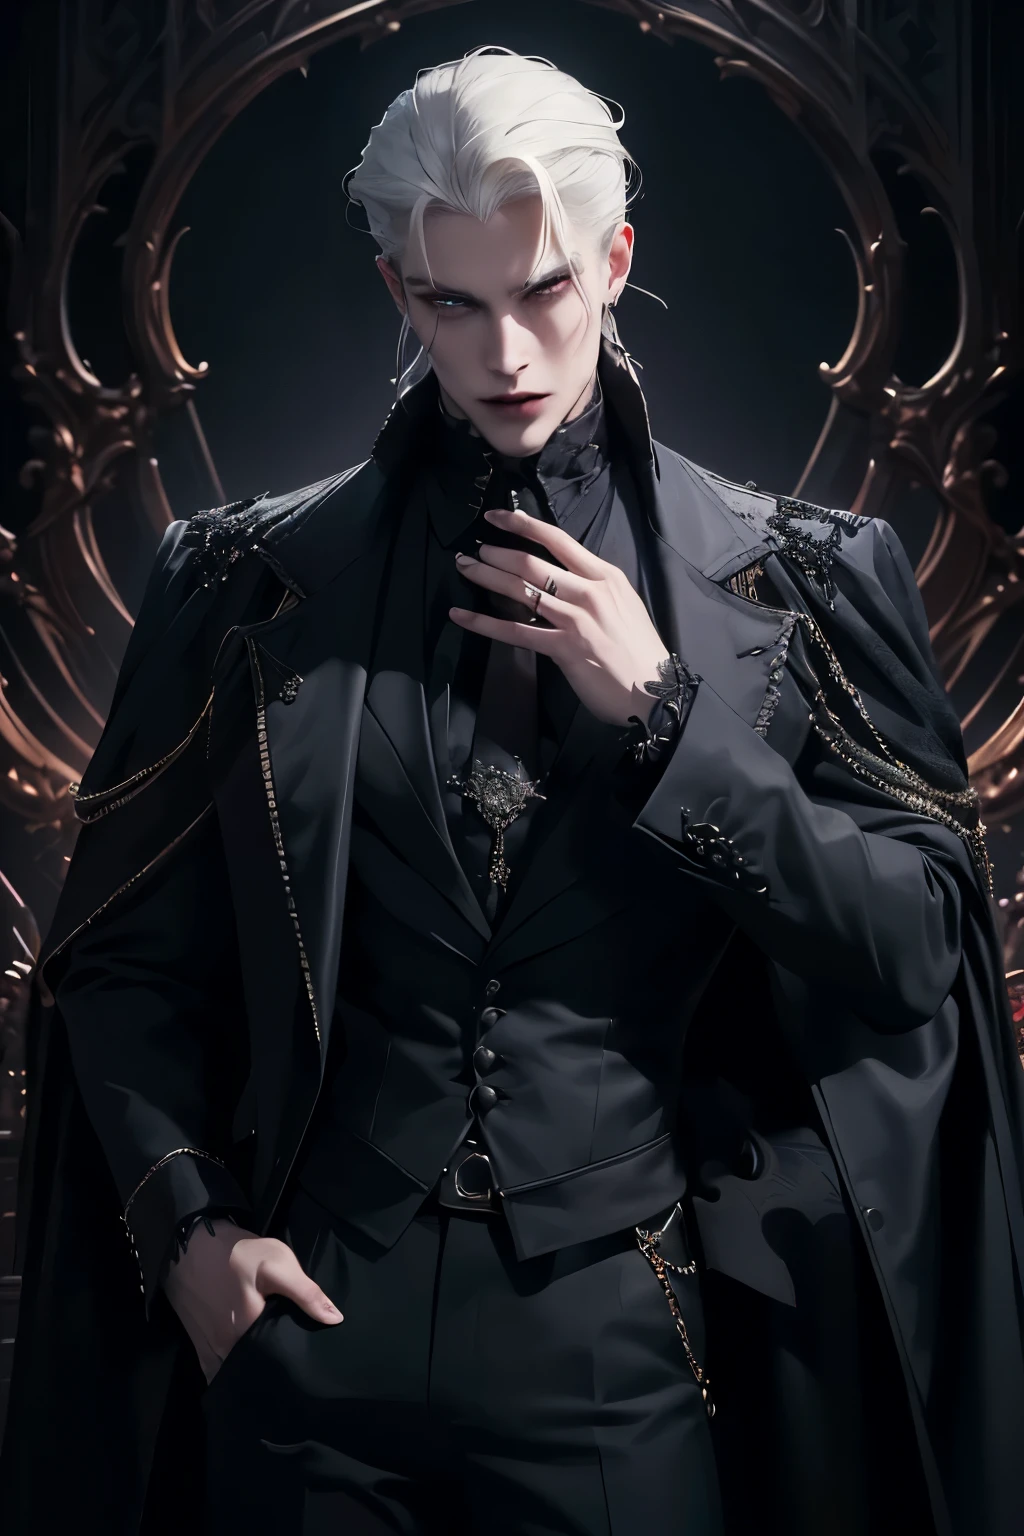 ((Лучшее качество)), ((шедевр)), (подробный), ((идеальное лицо)), ((Полутела)) идеальные пропорции, (Он красивый принц-вампир, Ему 18 лет, заколотые уши, у него зализаны назад волосы, белые волосы, лорд вампиров, он носит готическую одежду, он элегантен, мрачный готический стиль, ((идеальное лицо)) вампирская атмосфера, ((вампирская атмосфера)) 